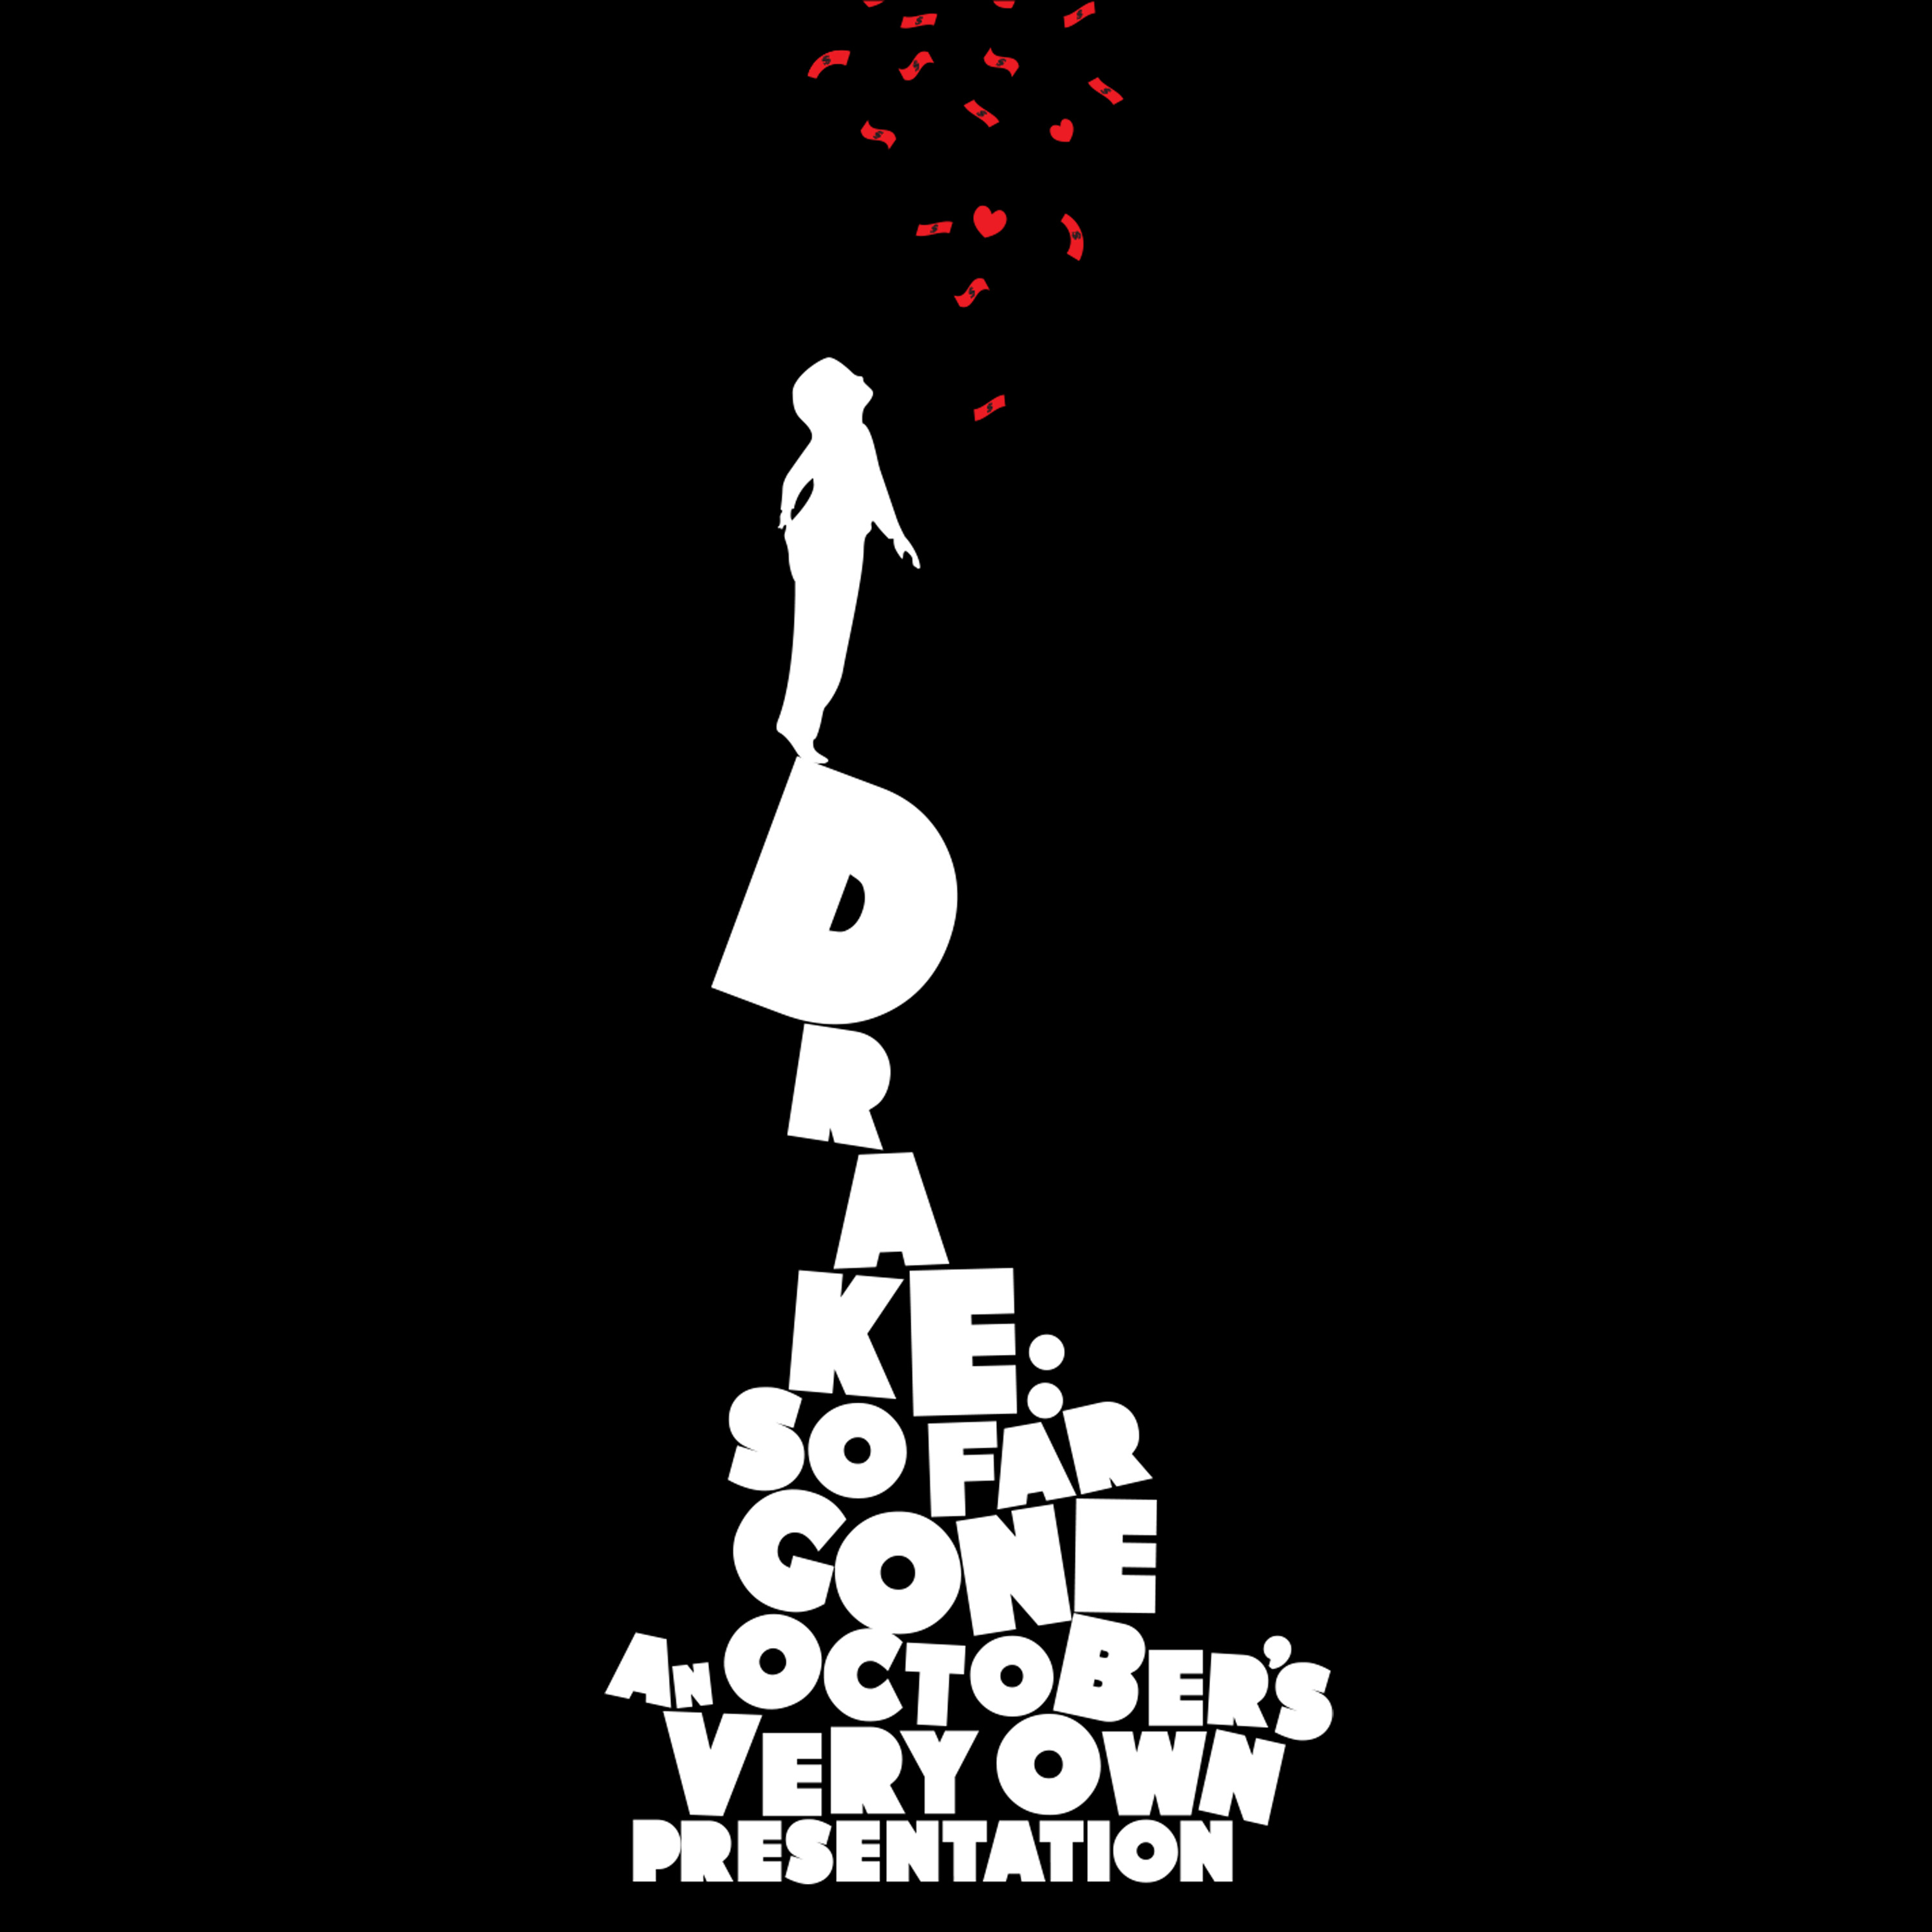 Drake-So Far Gone-24-44-WEB-FLAC-2019-OBZEN